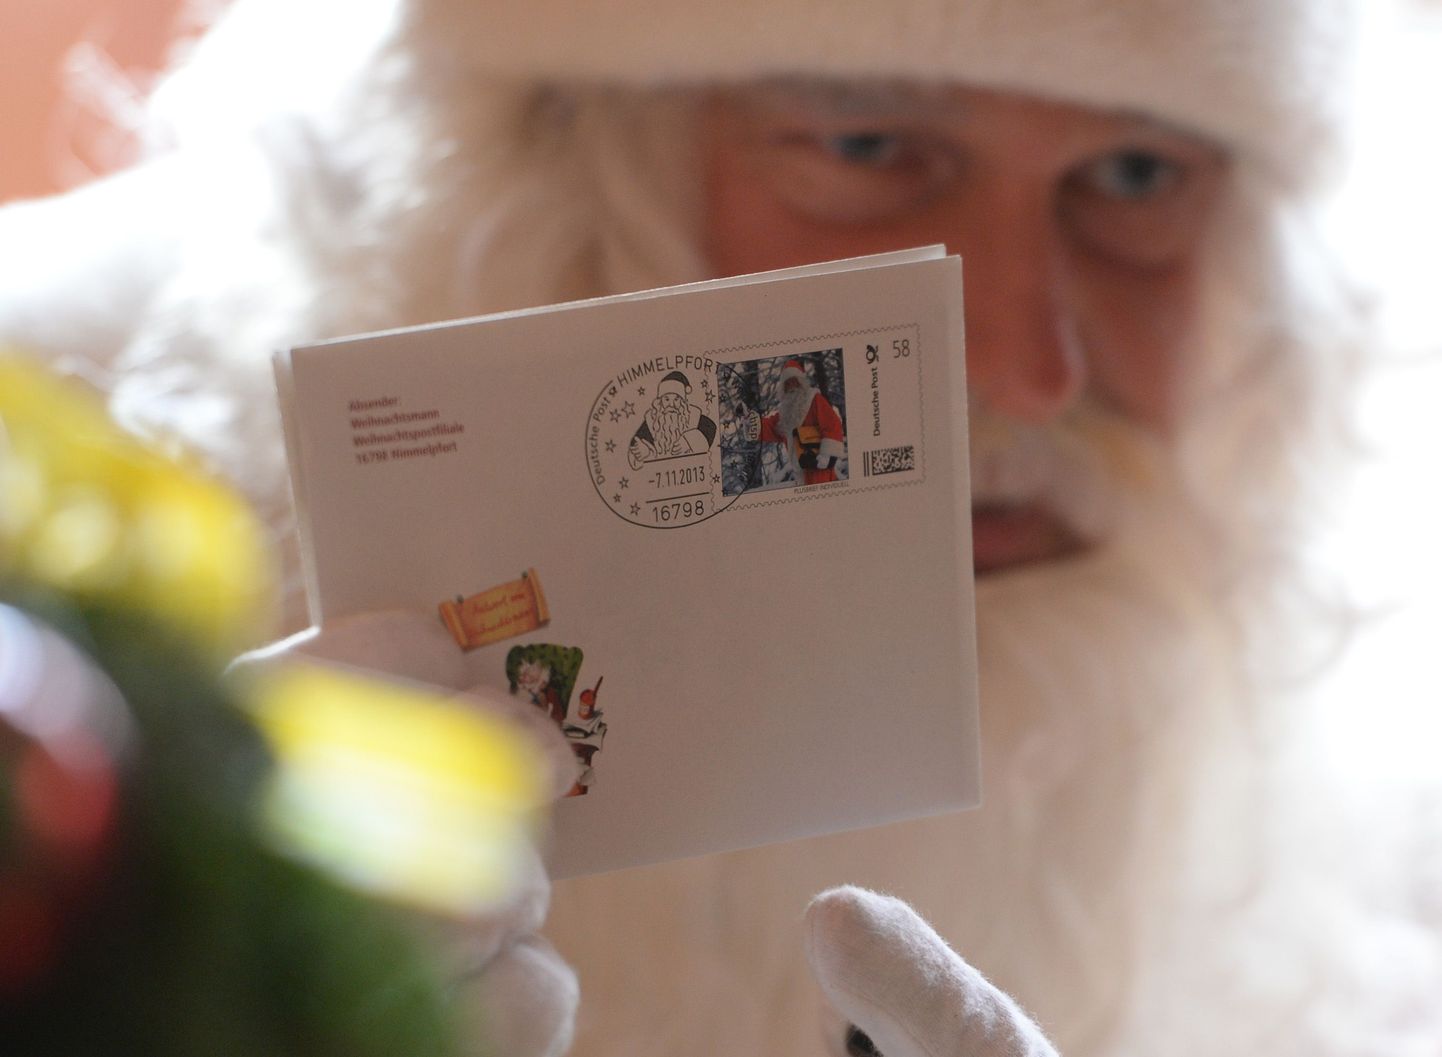 Jõuluvana püüab laste kirjadele ka vastata.